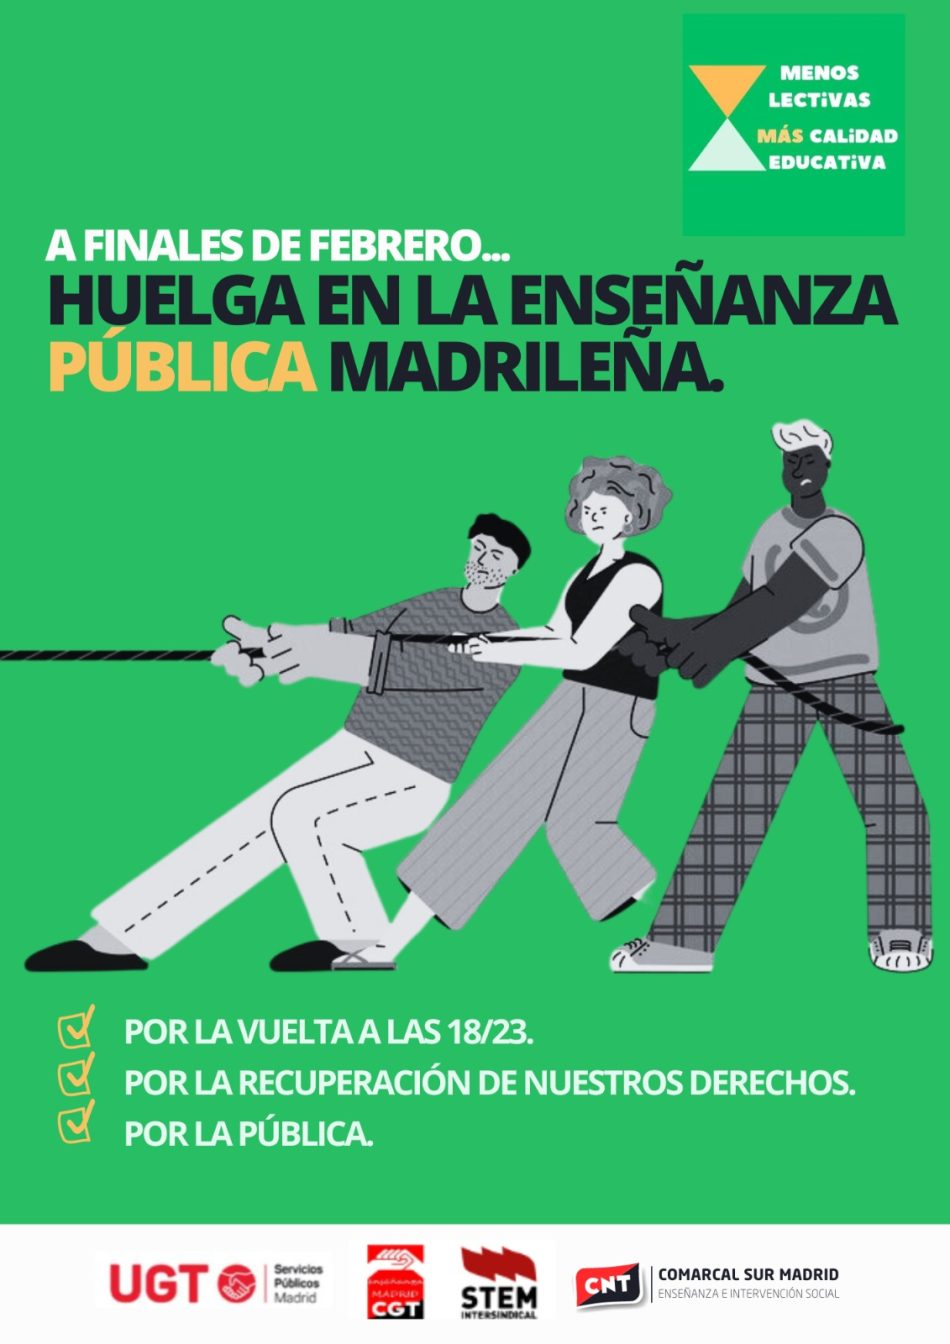 La educación pública madrileña irá a la huelga a finales de febrero en el marco de la campaña “Menos lectivas, más calidad”